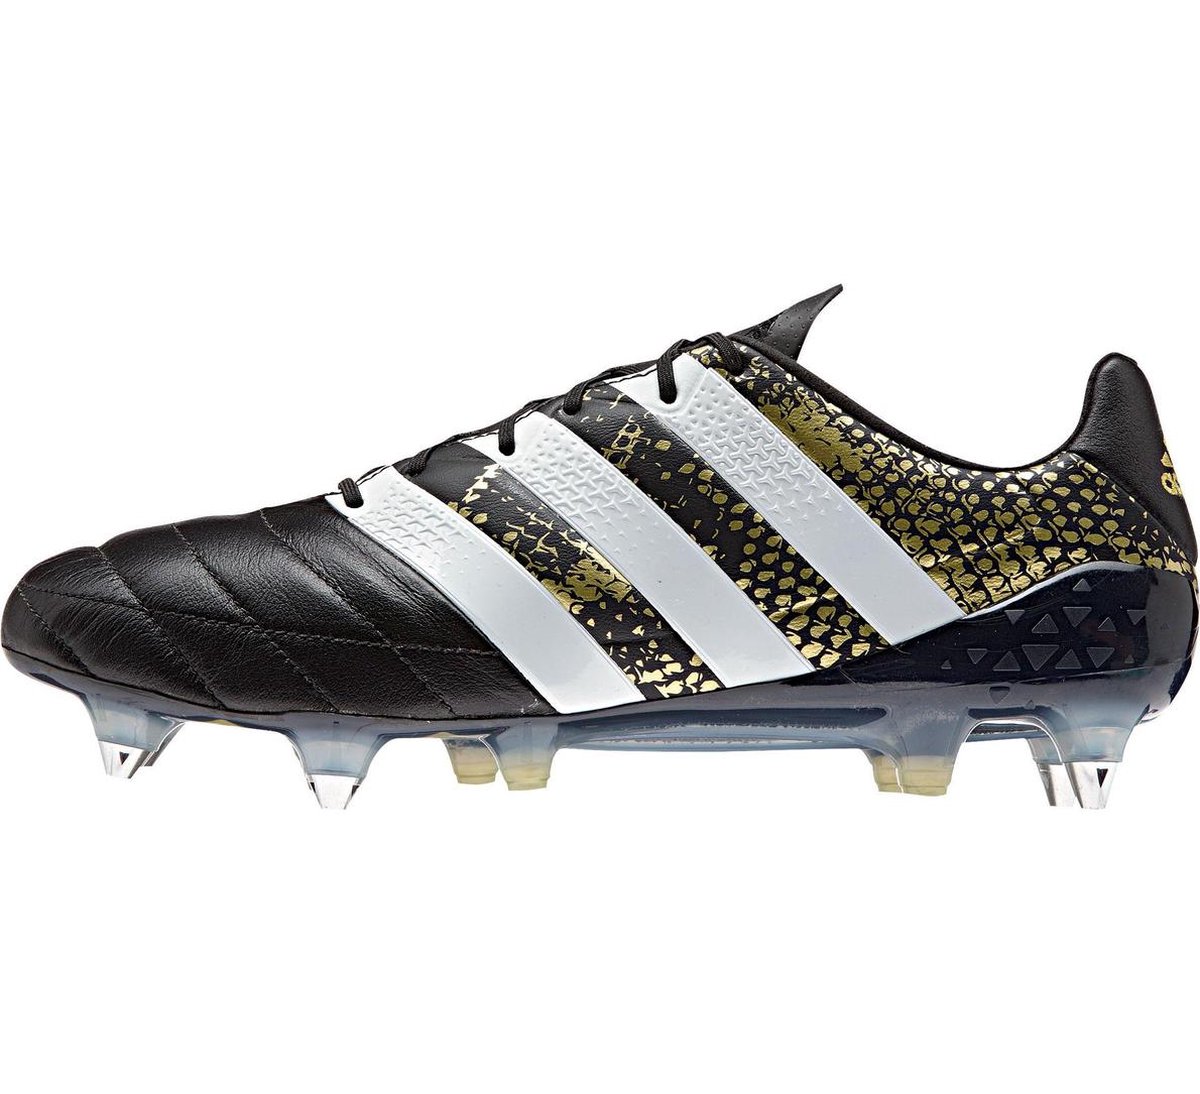 adidas ACE 16.1 SG Voetbalschoenen - Maat 47 1/3 - Mannen - zwart/wit/goud  | bol.com